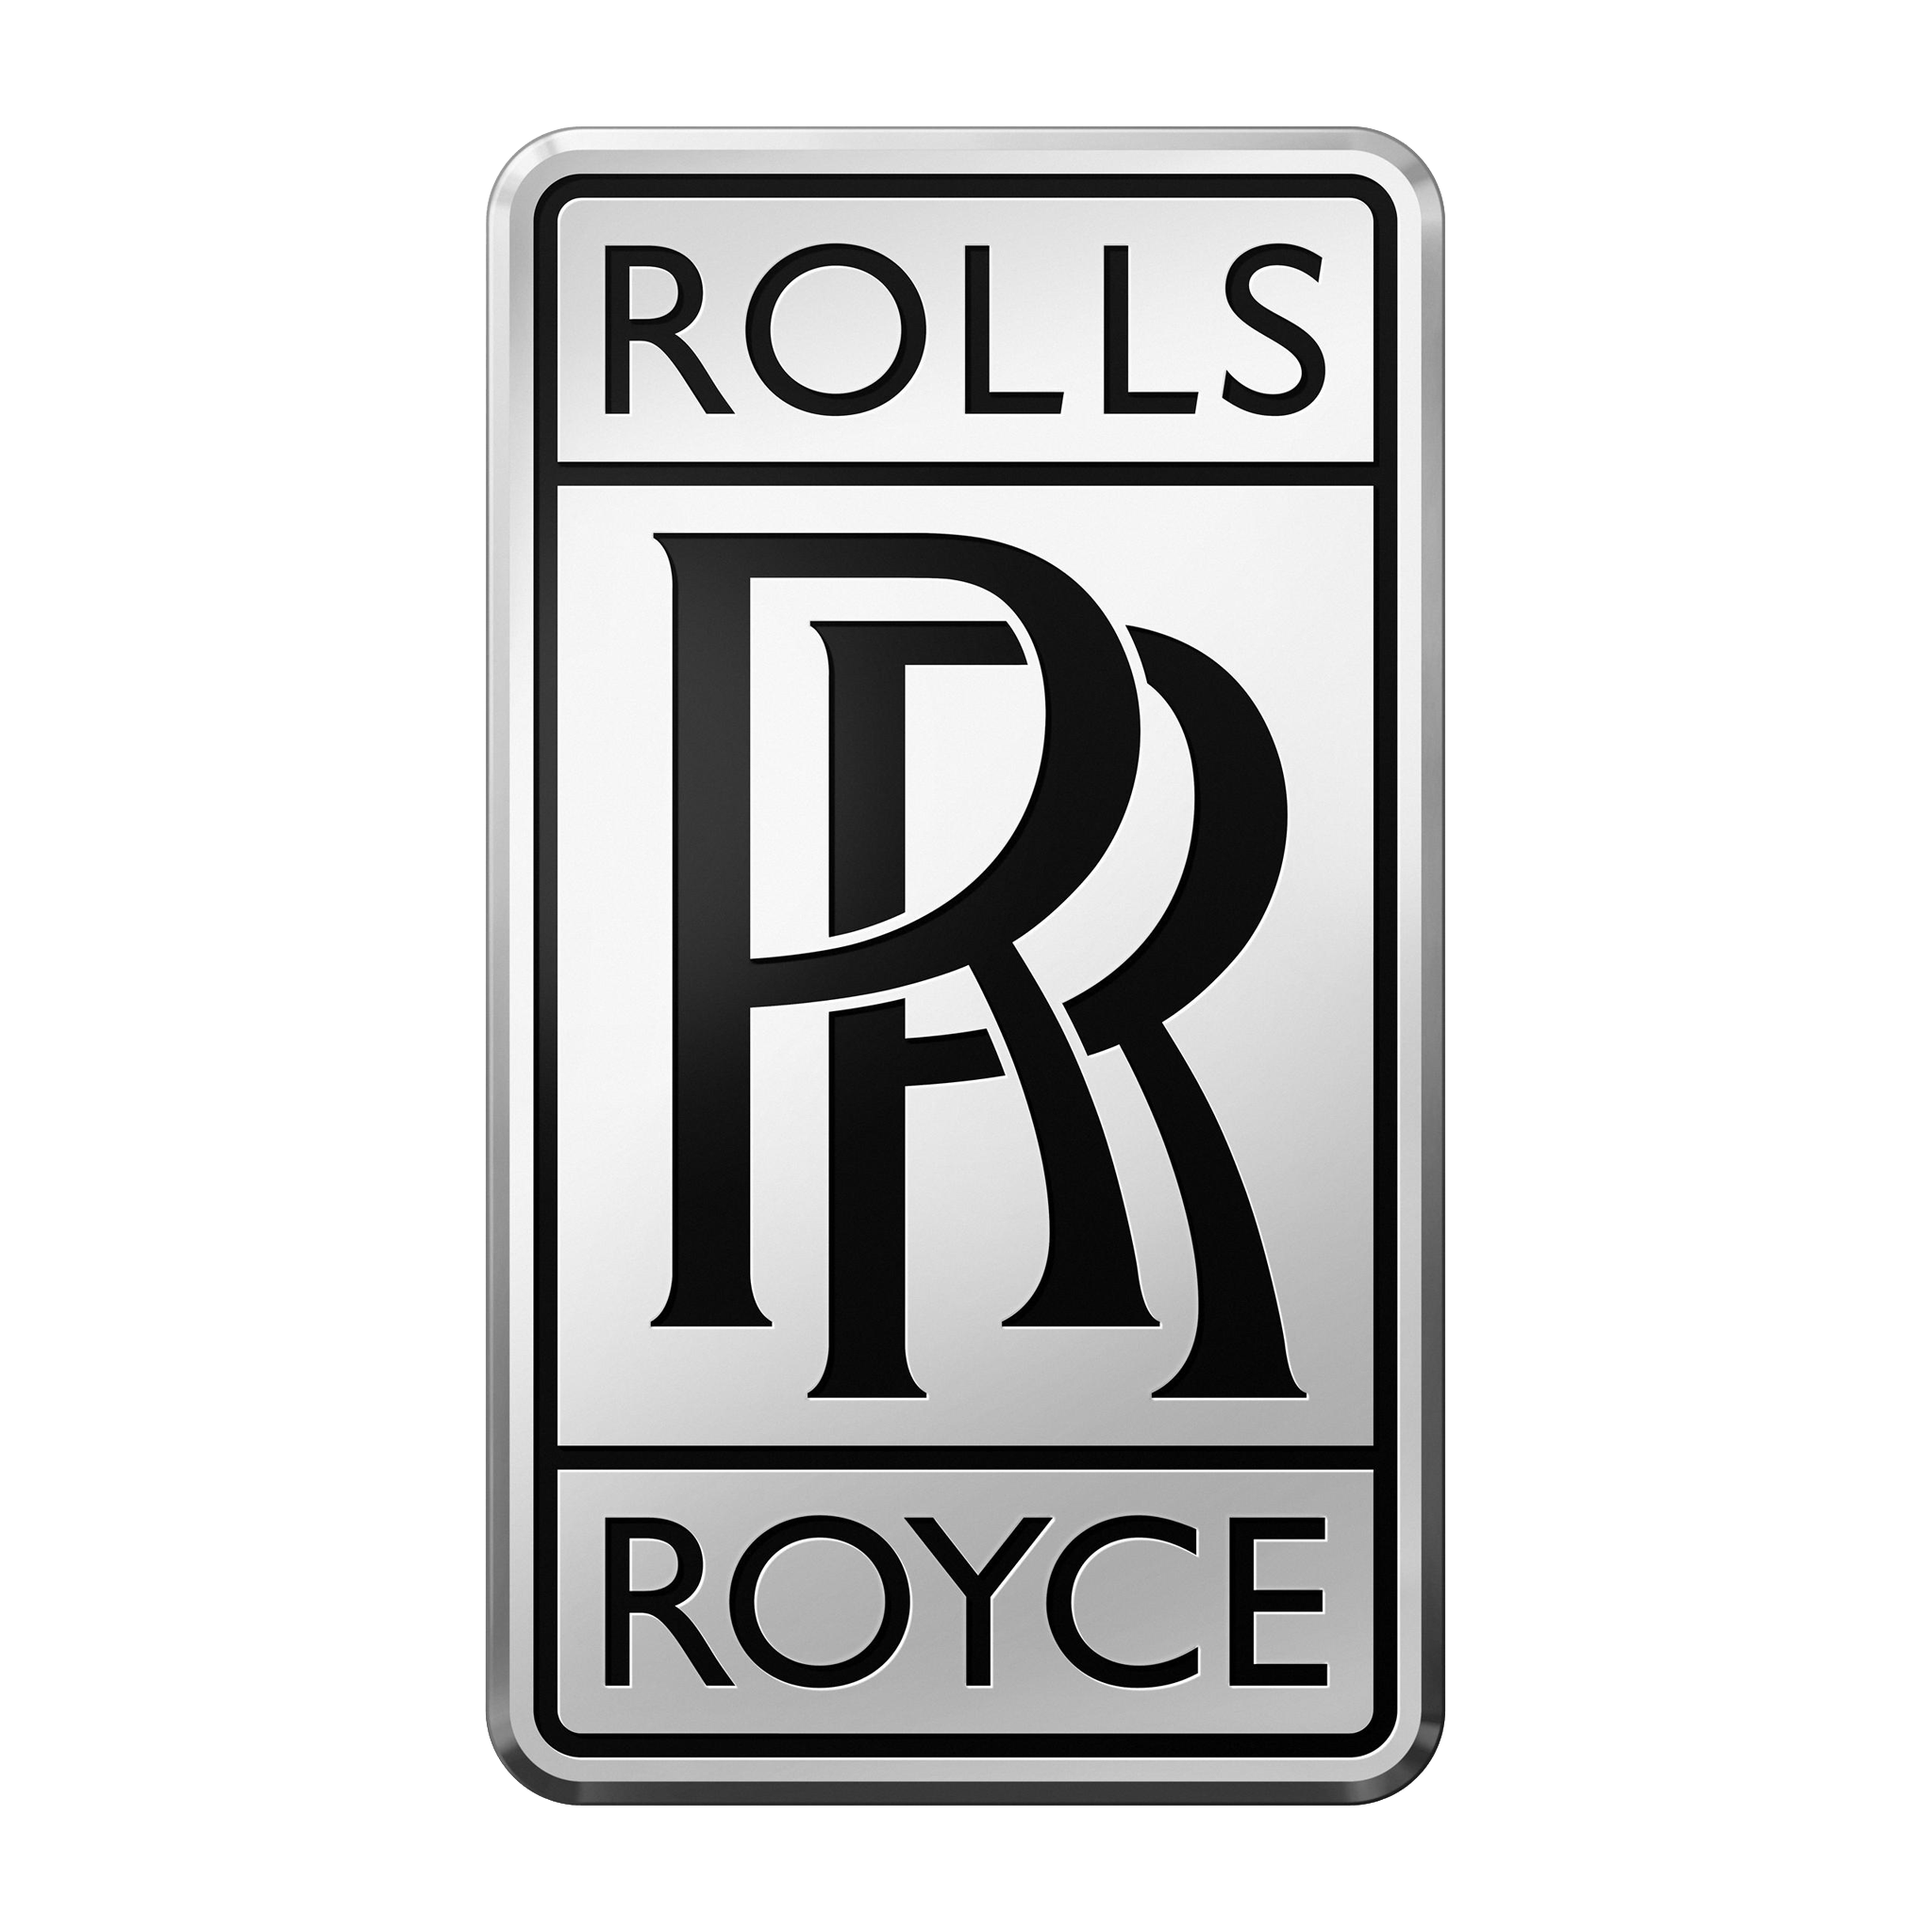 Tổng hợp hơn 56 về rolls royce logo font generator hay nhất  Du học Akina